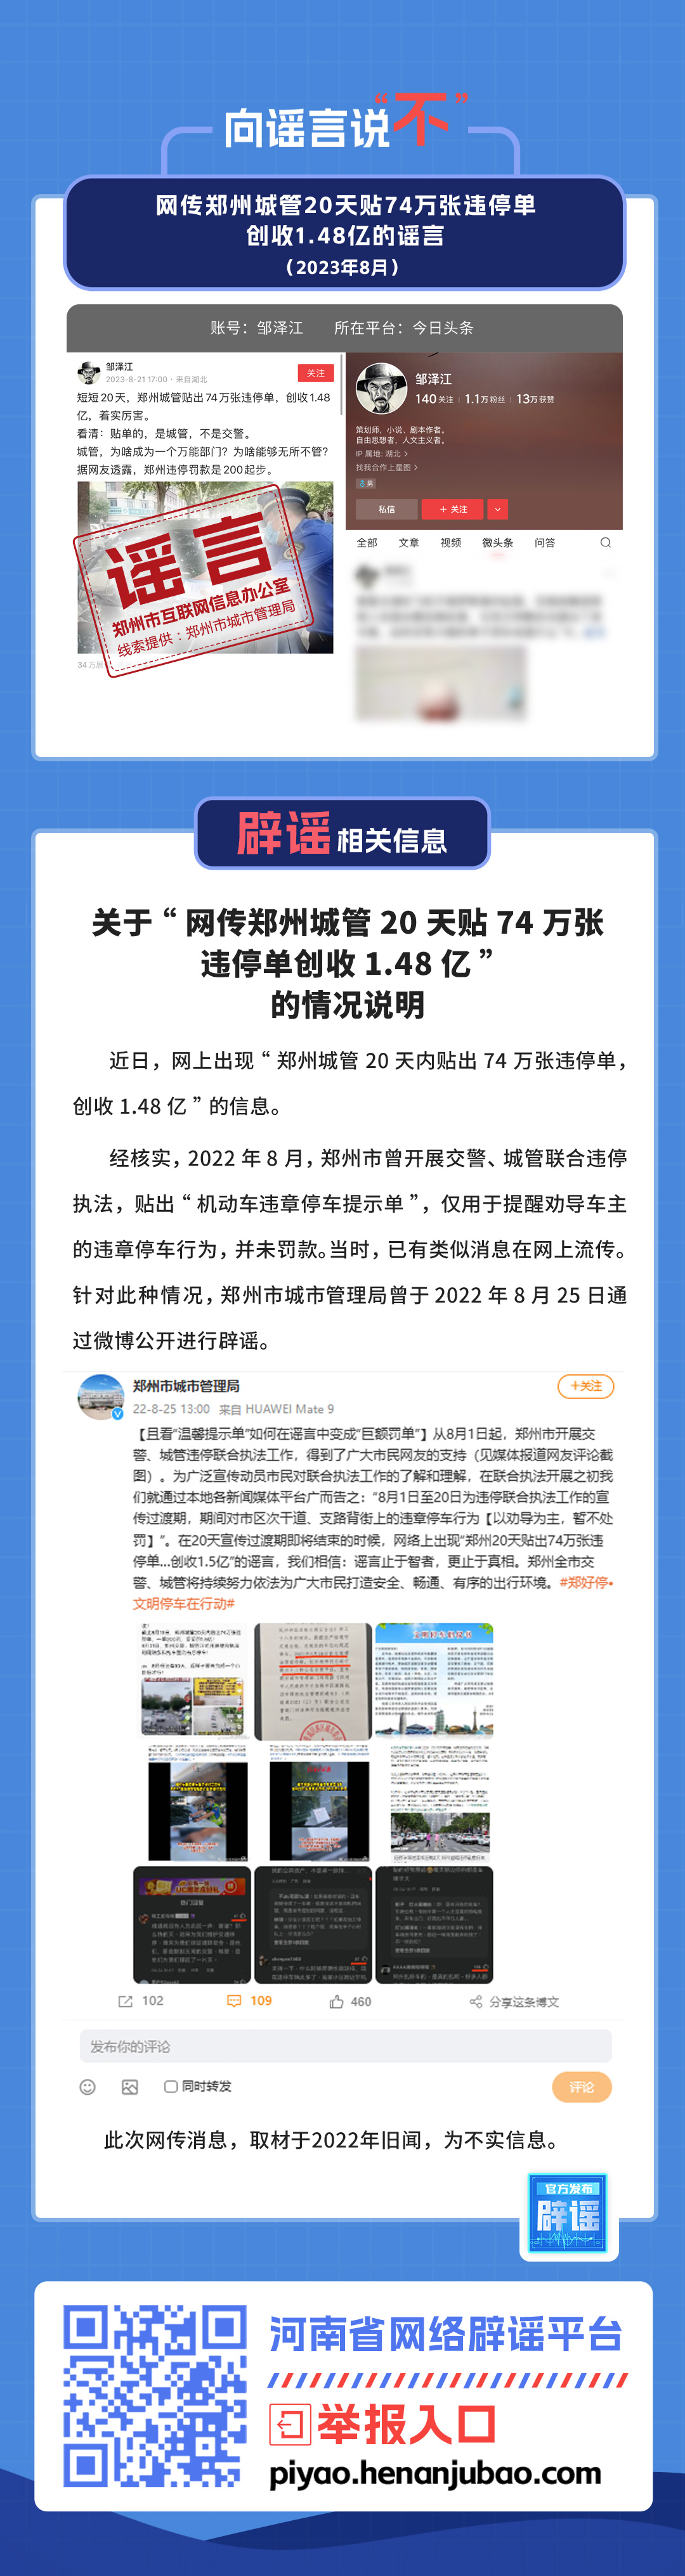 网传郑州城管20天贴74万张违停单创收1.48亿的谣言